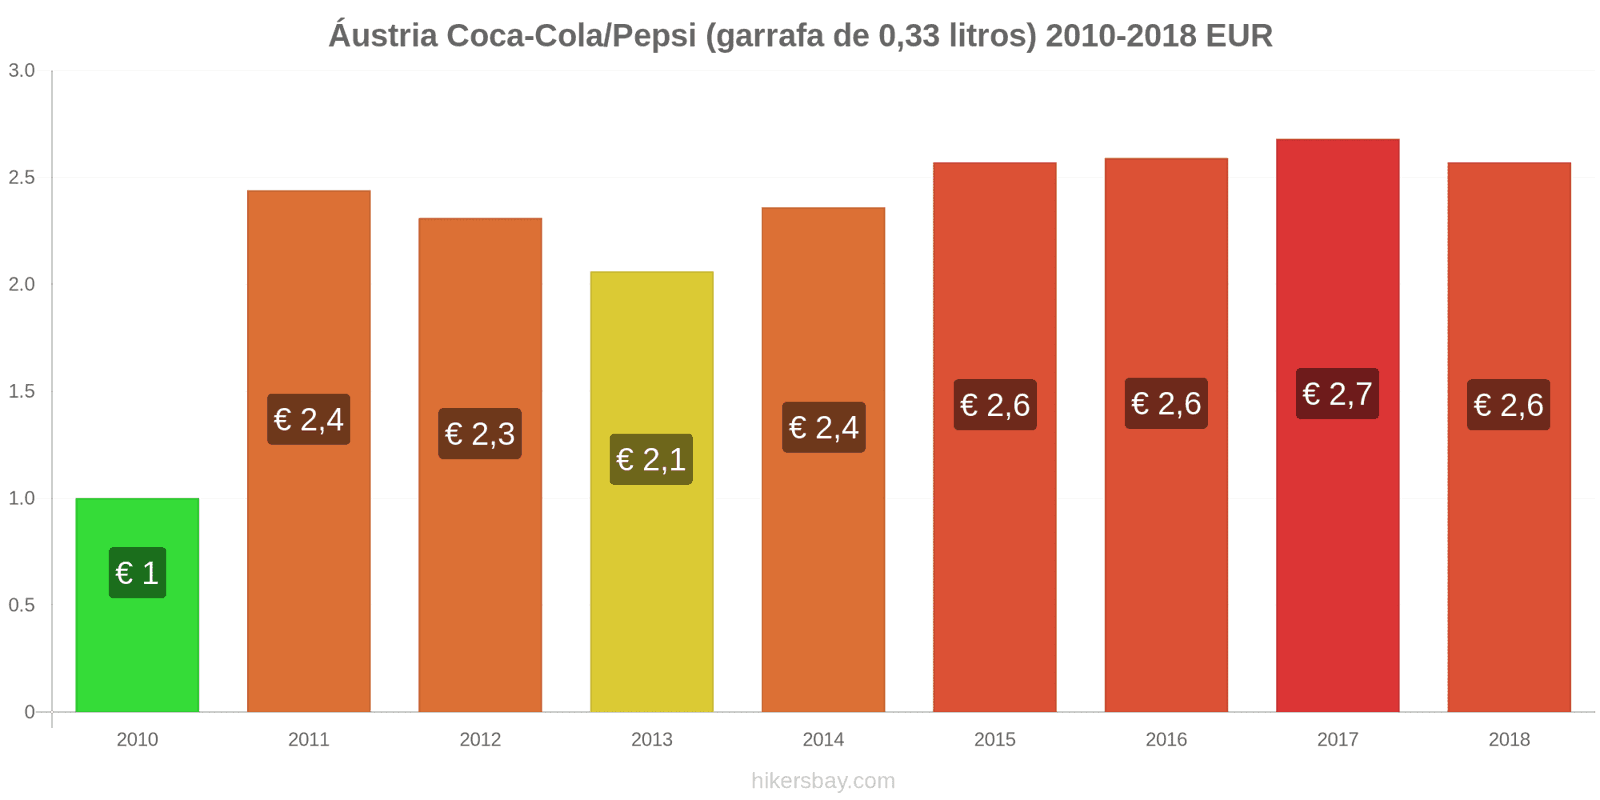 Áustria mudanças de preços Coca-Cola/Pepsi (garrafa de 0.33 litros) hikersbay.com